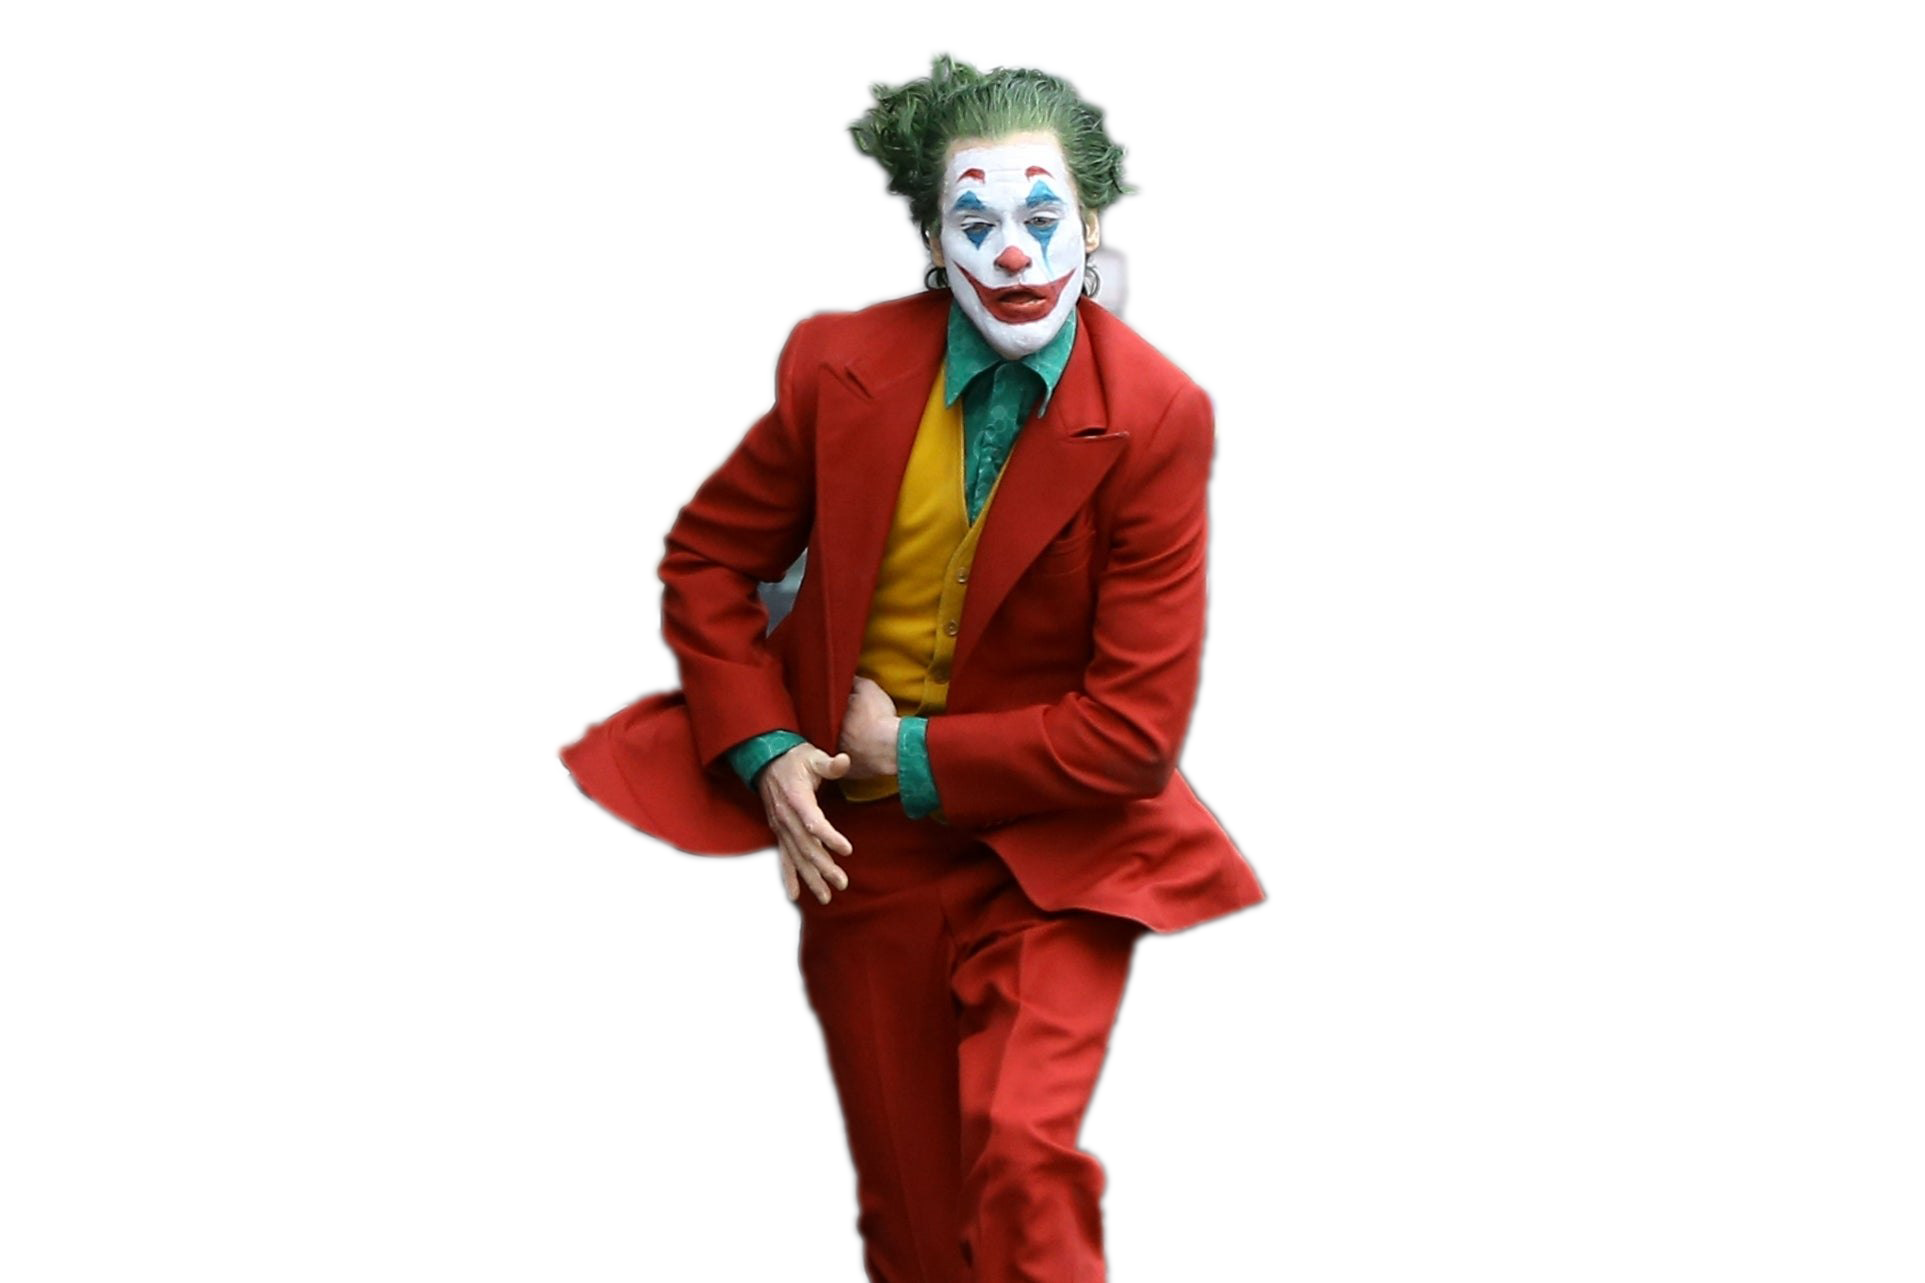 Joker Photos Villain Free Download Image PNG Image